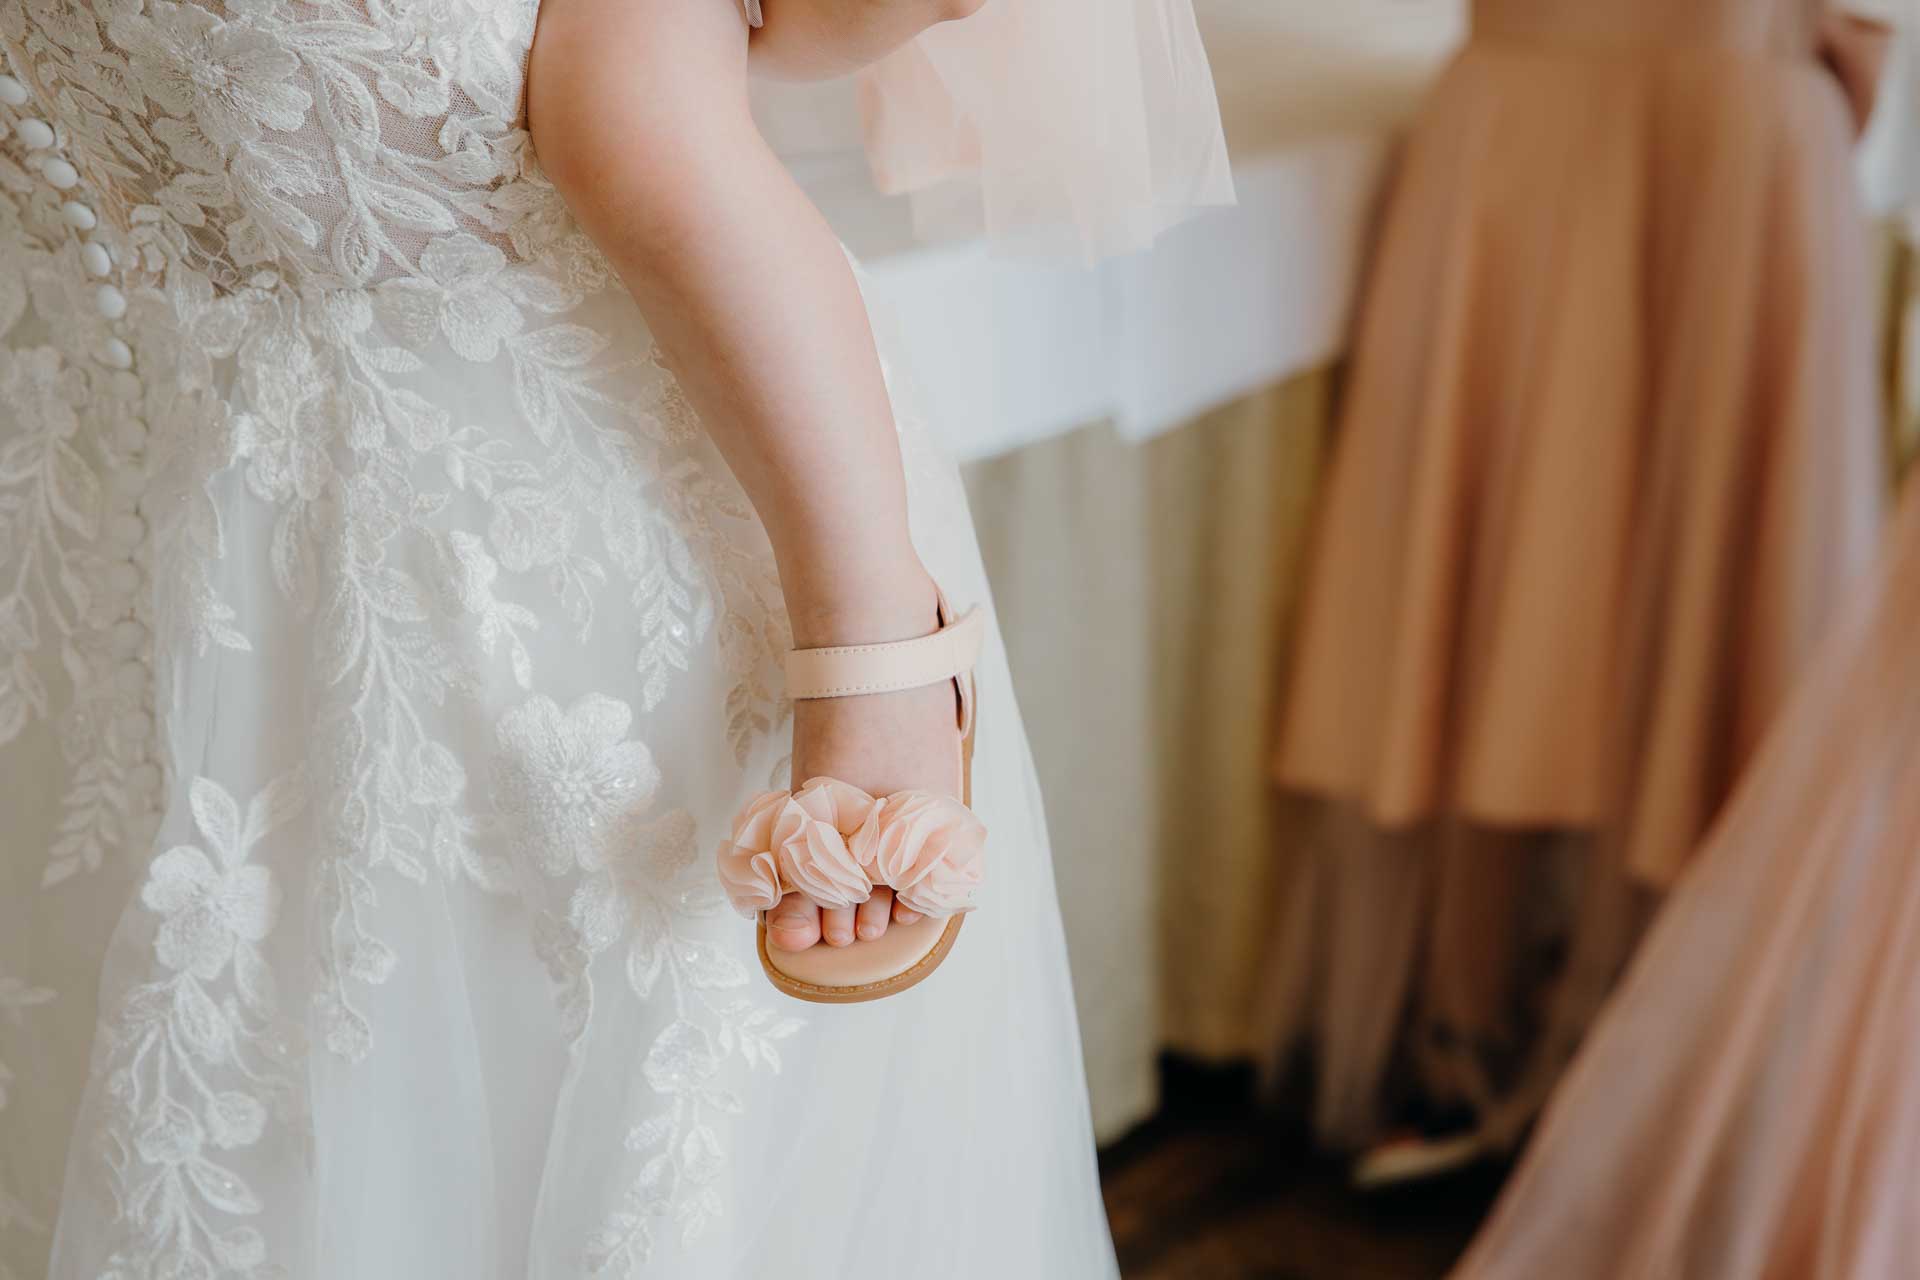 Nærbillede af bryllupsdetaljer, herunder de elegante invitationer, brudens glitrende smykker og gommens manchetknapper, alt sammen lagt omhyggeligt frem.